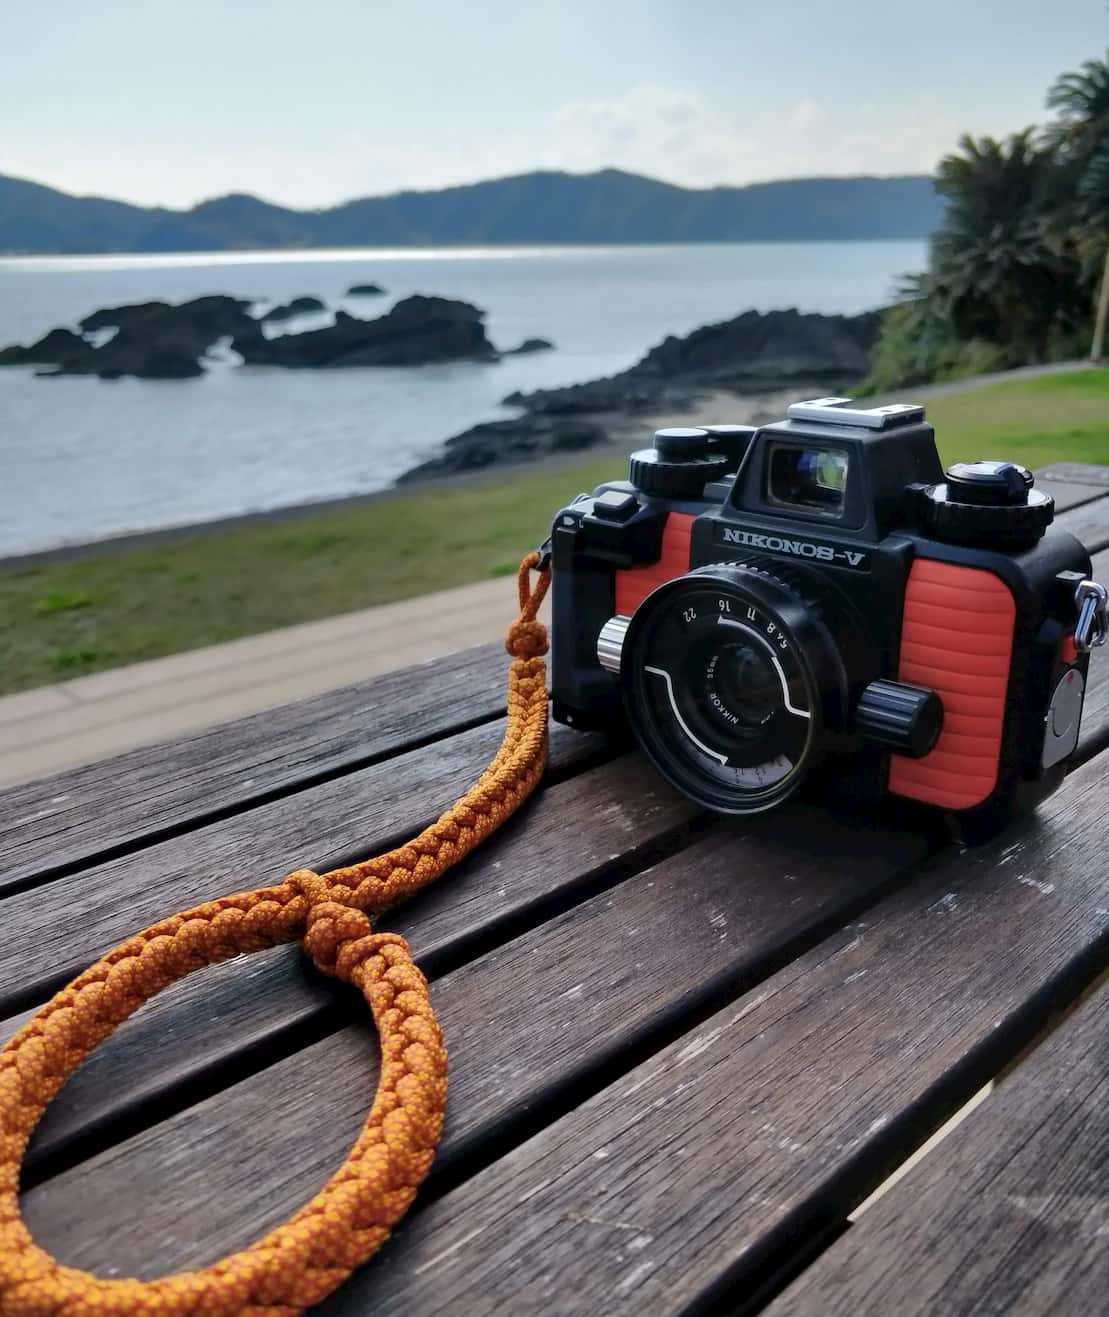 ニコノスV - 水中冒険カメラ | Tabi Traveler